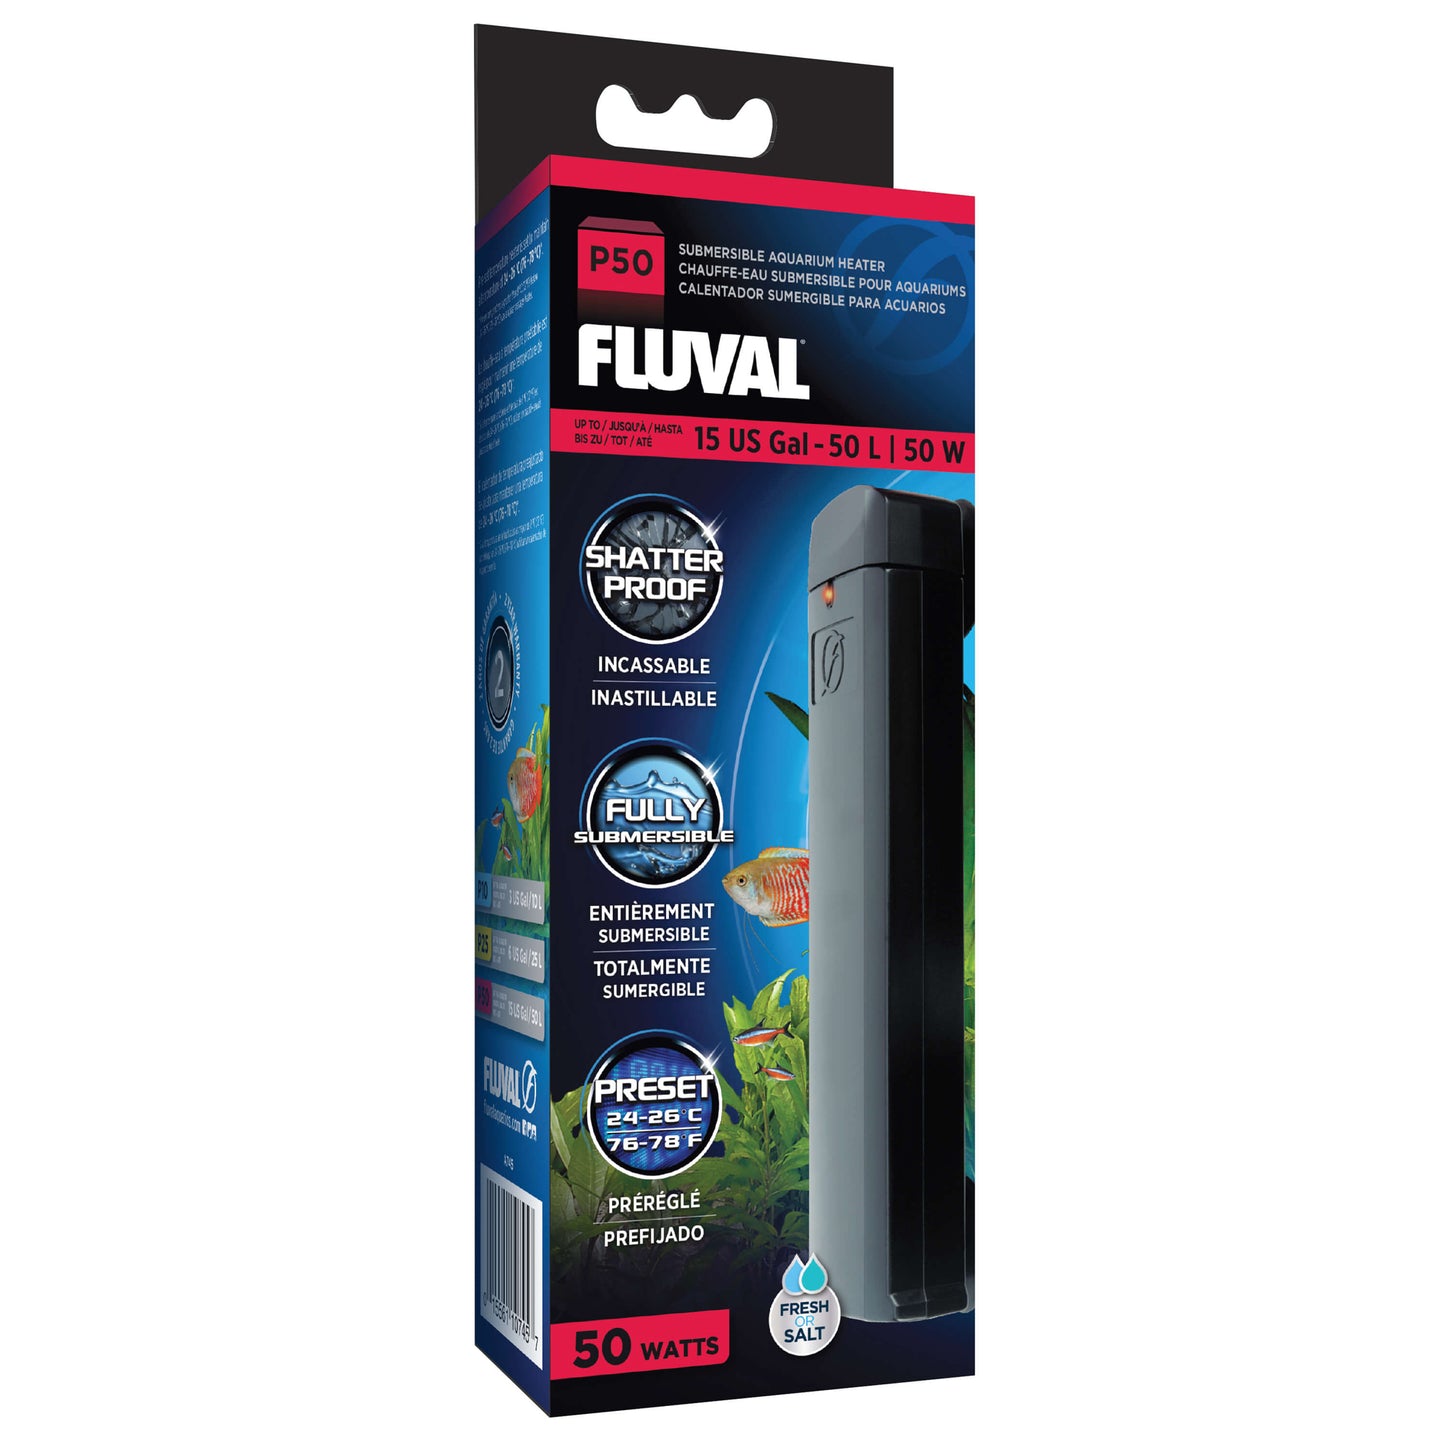 Fluval® Pre-Set Submersible Aquarium Heater